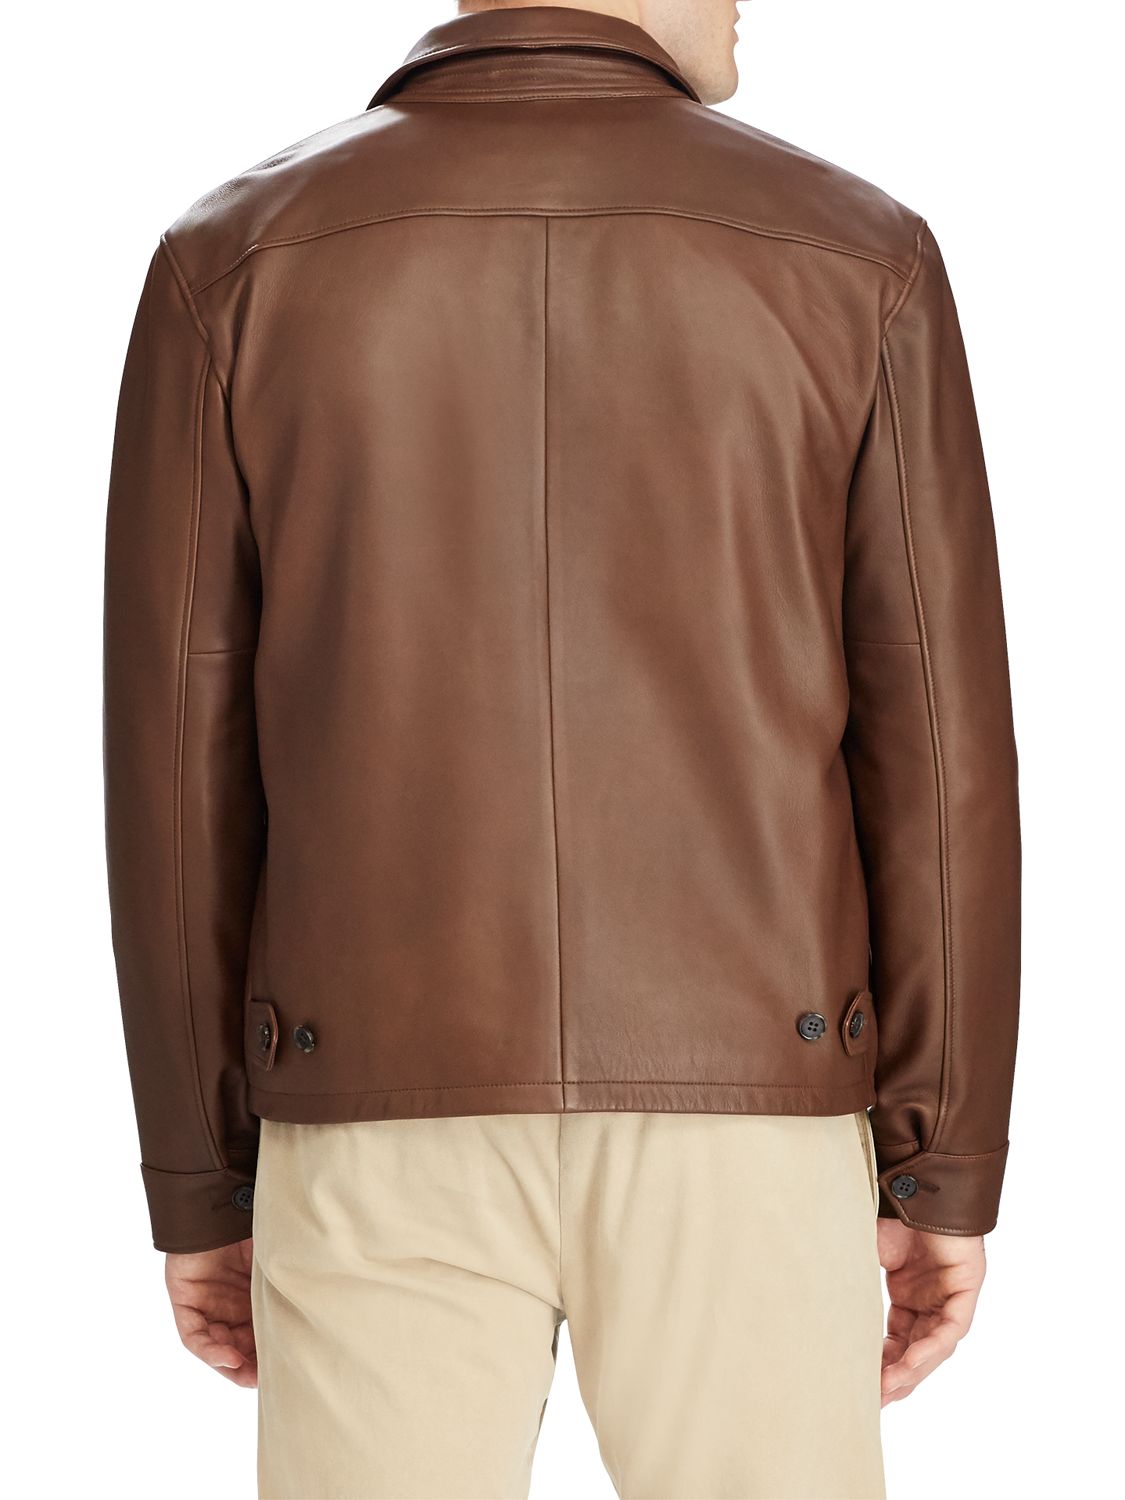 ralph lauren maxwell leather jacket